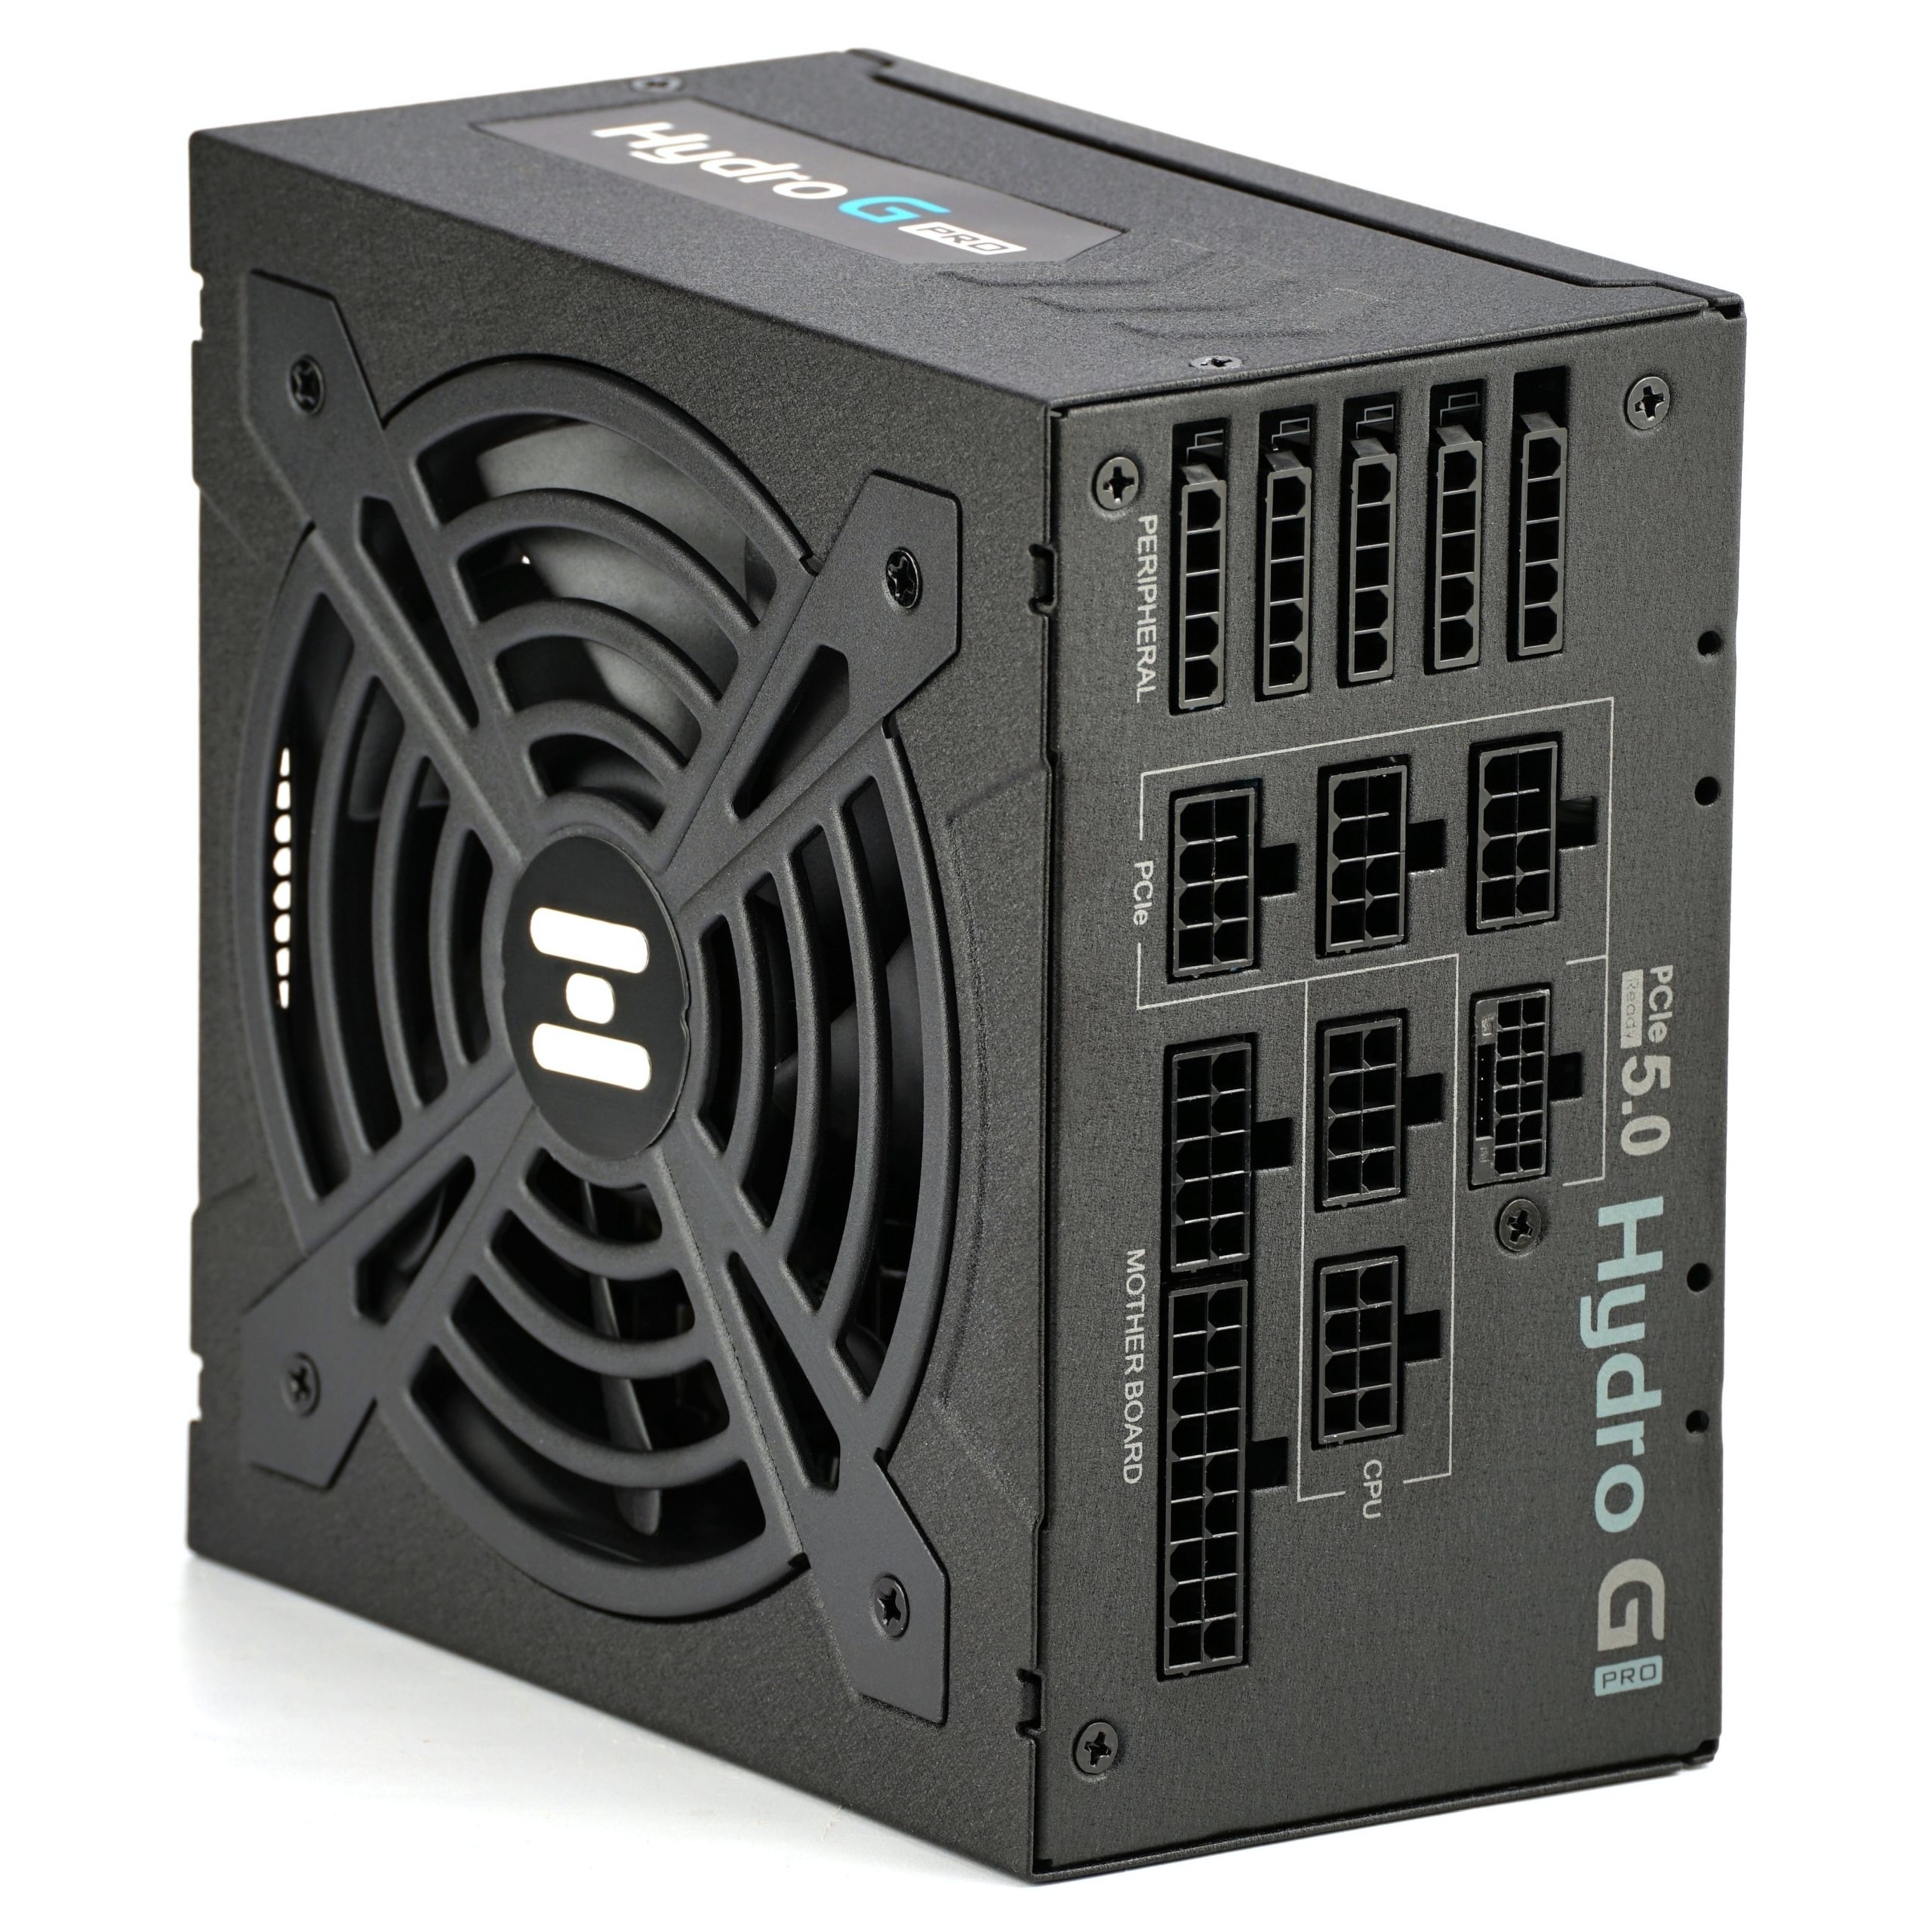 FSP HYDRO G PRO : 1000 watts en ATX 3.0 et PCIe 5.0 